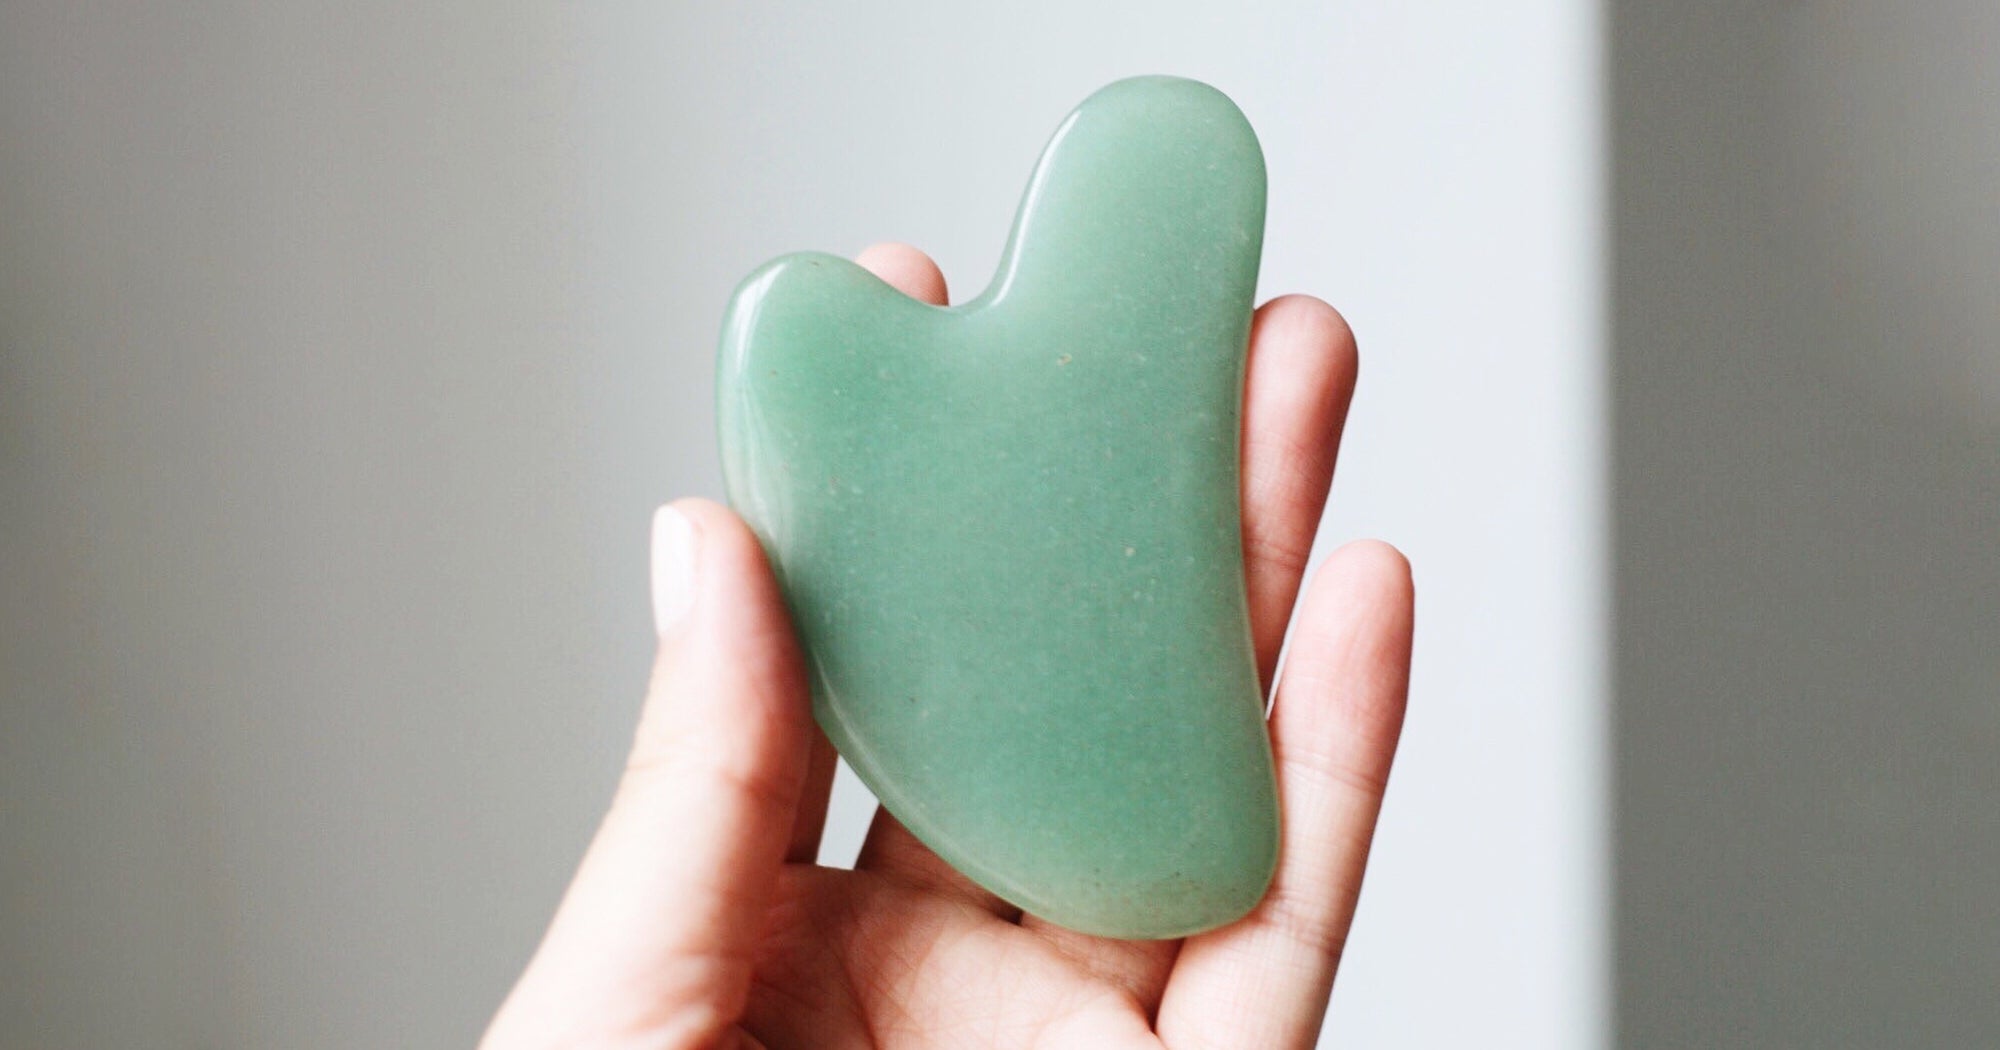 Best Gua Sha Stones Tools For At Home Facial Massage